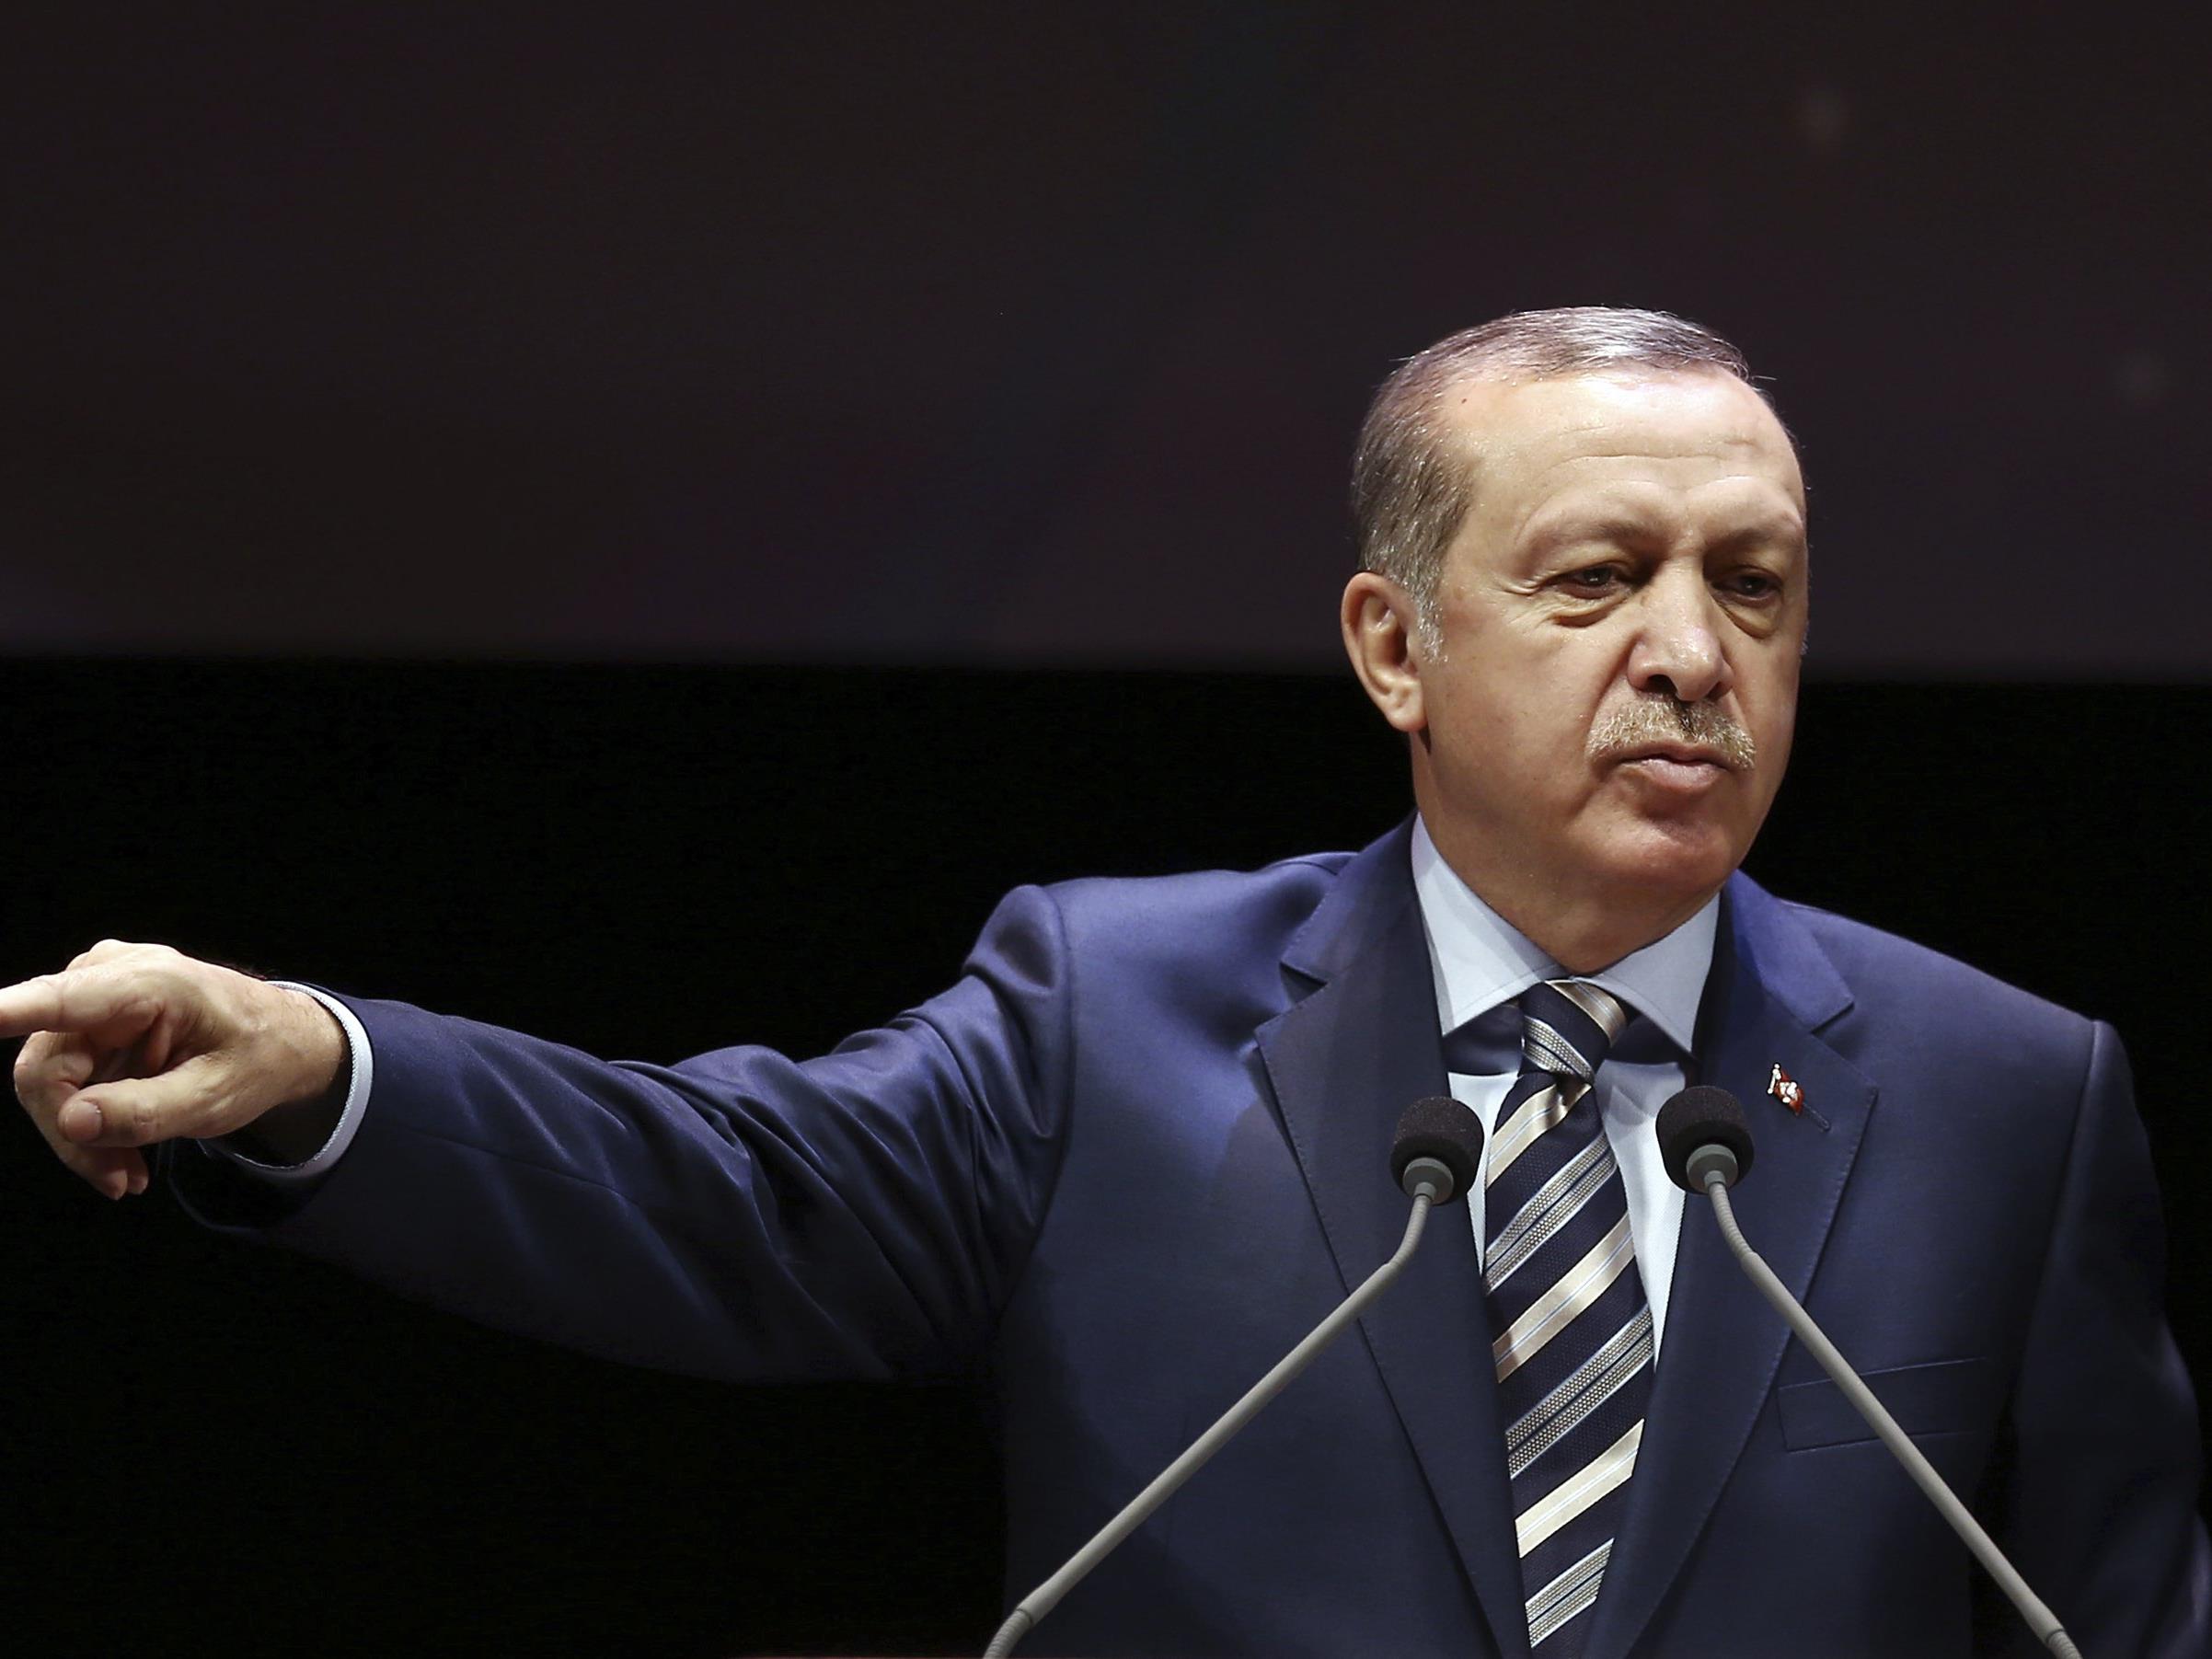 Präsident: "Türkei wird ihren Weg entschlossen weitergehen".